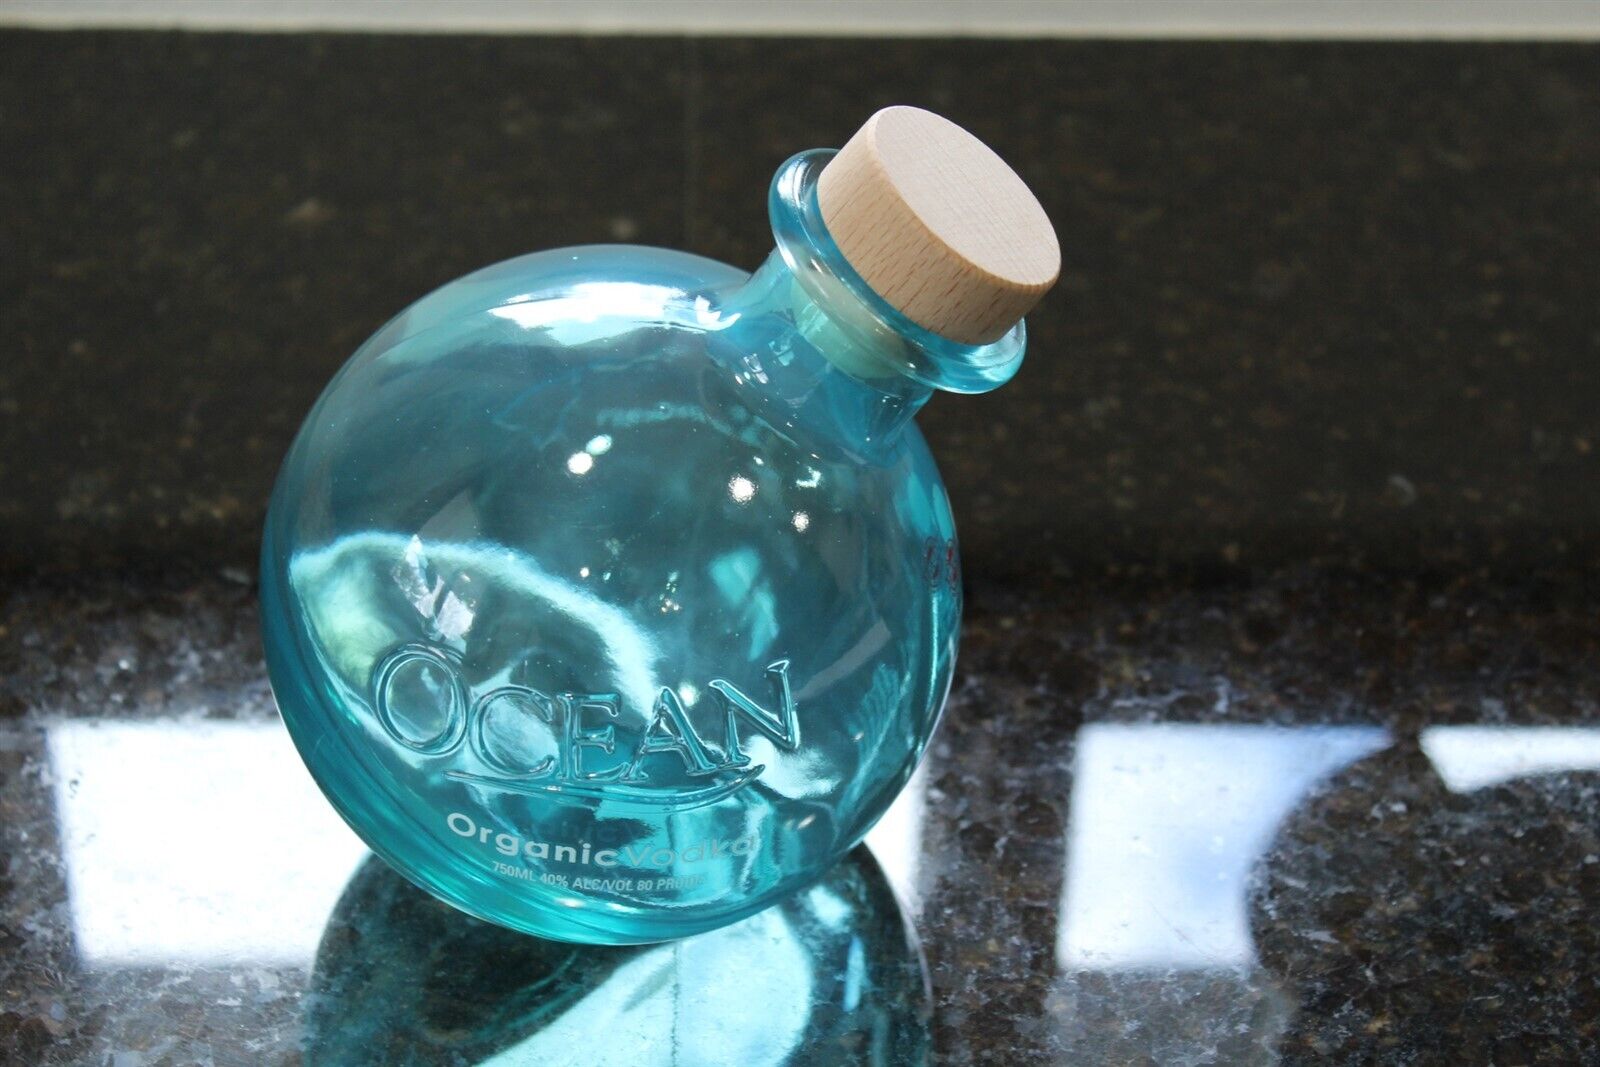 Ocean Organic Vodka Empty Blue Glass Bottle With Wood Stopper